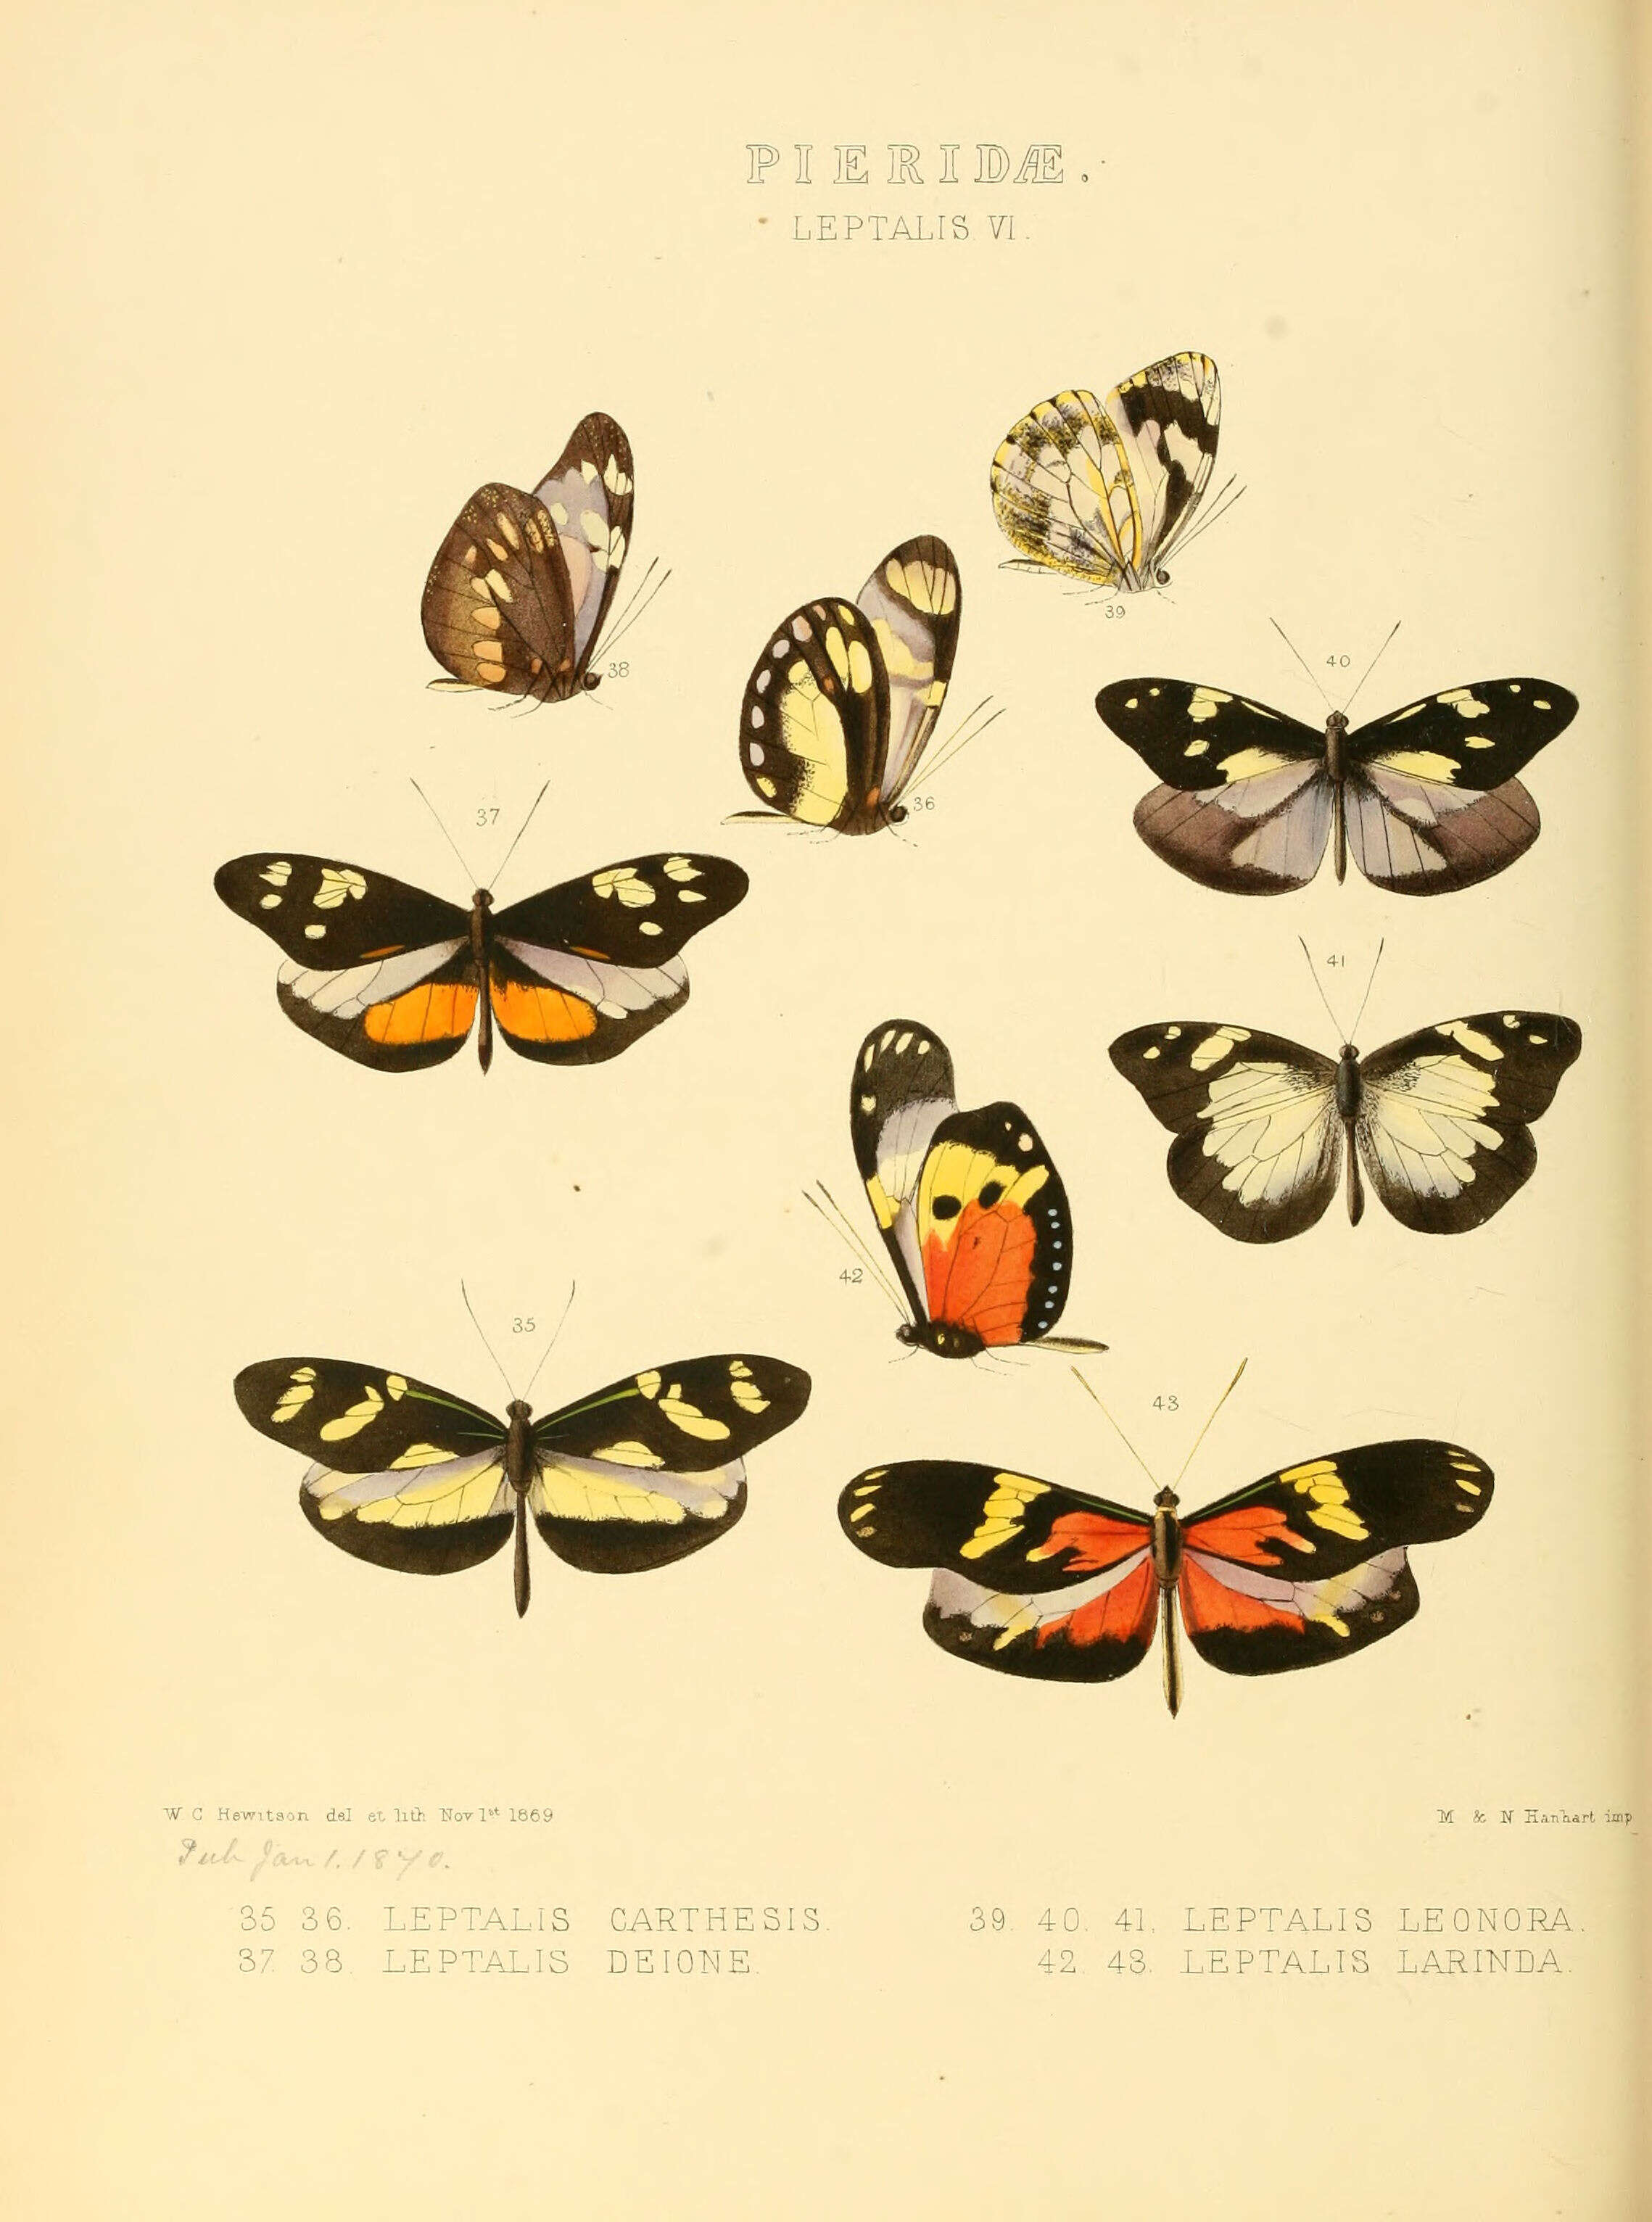 Image of Patia cordillera (Felder & Felder 1862)